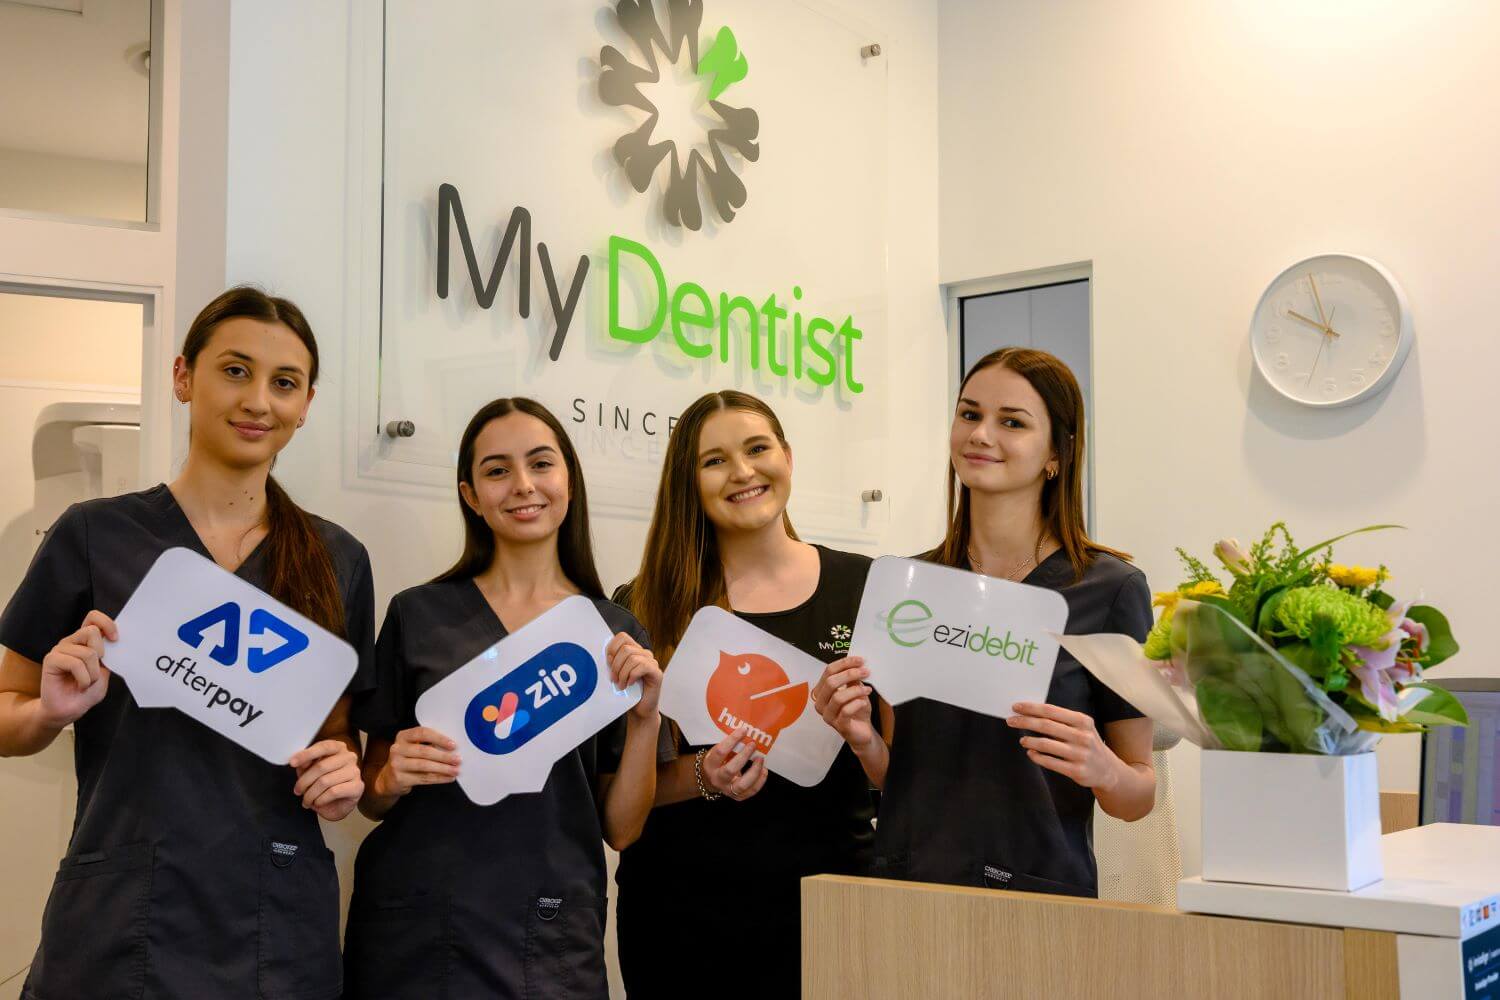 Payment Plan Options Alderley, Newmarket, Brisbane - My Dentist